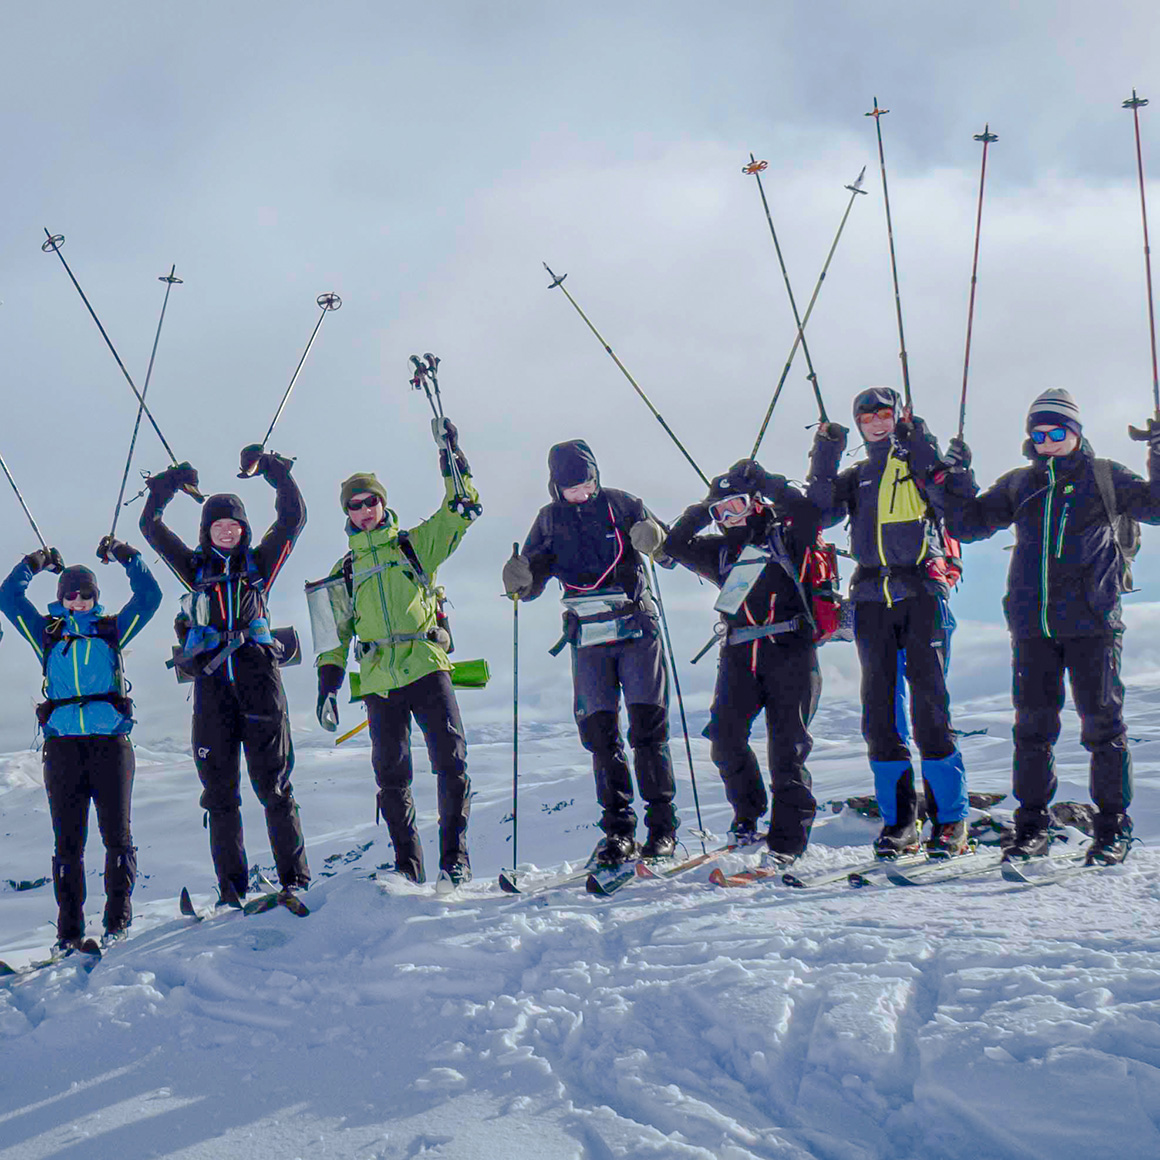 Skiing around Haukelifjell